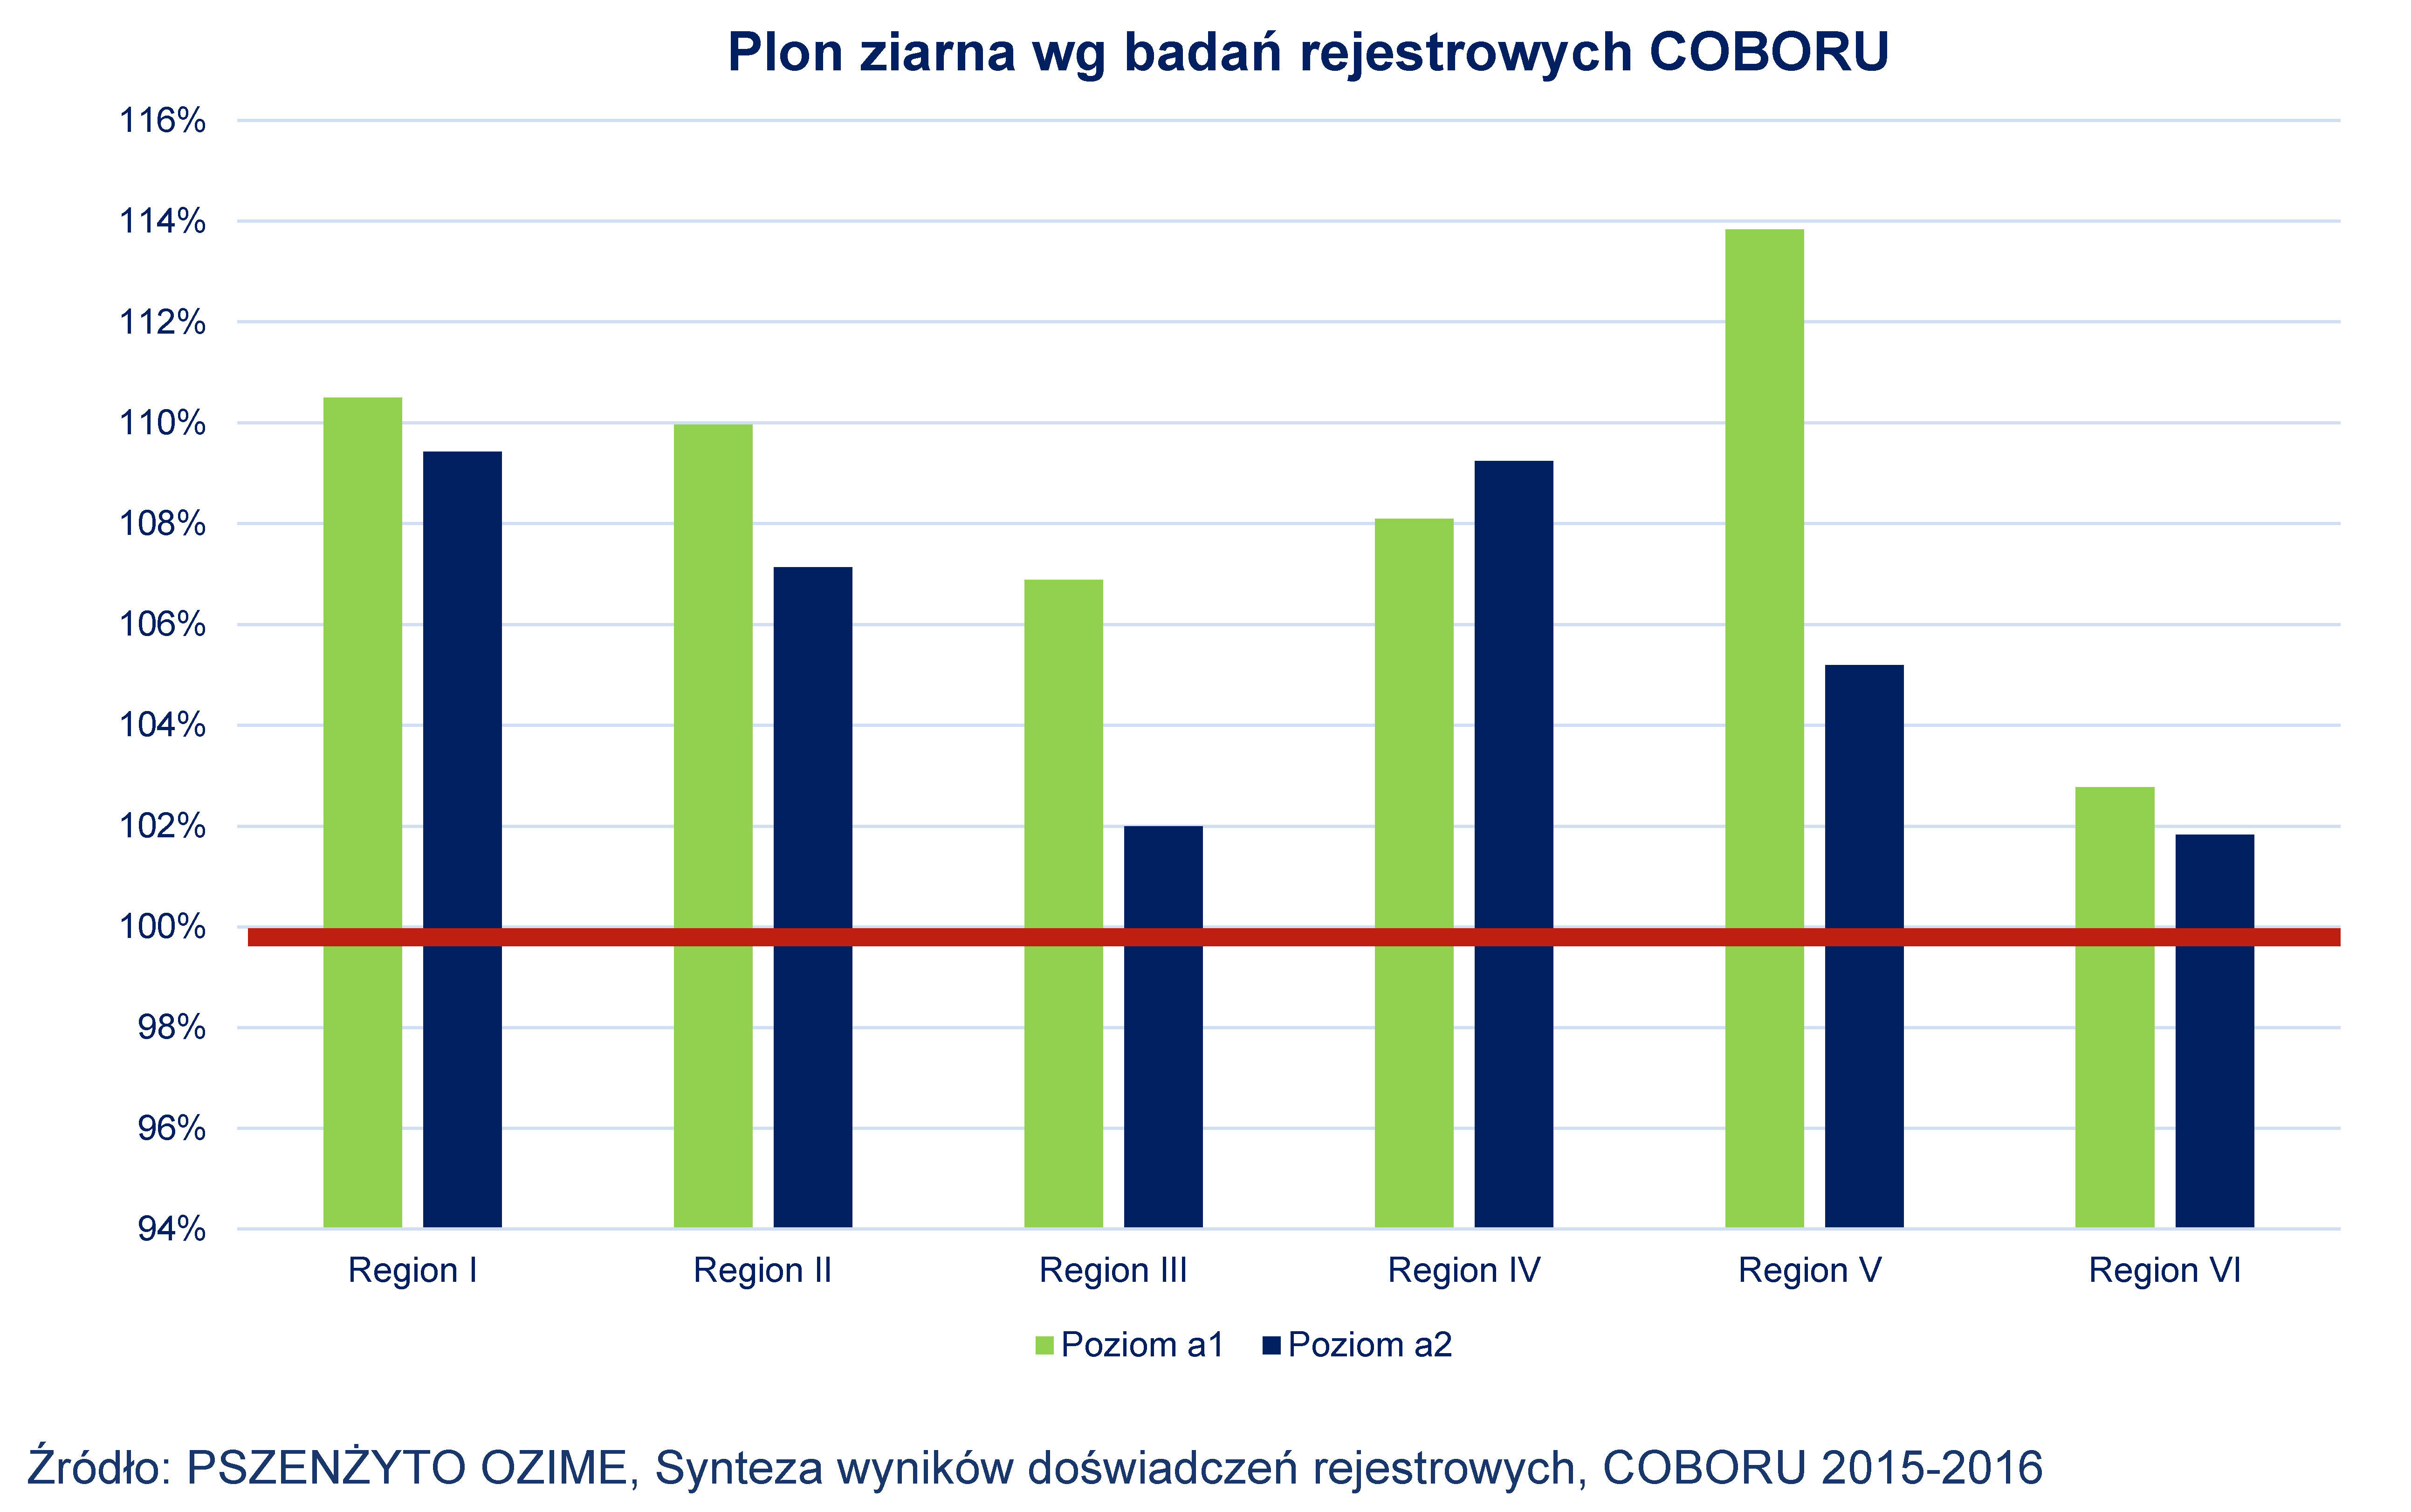 Plon ziarna wg badań rejestrowych COBORU, 2015-2018